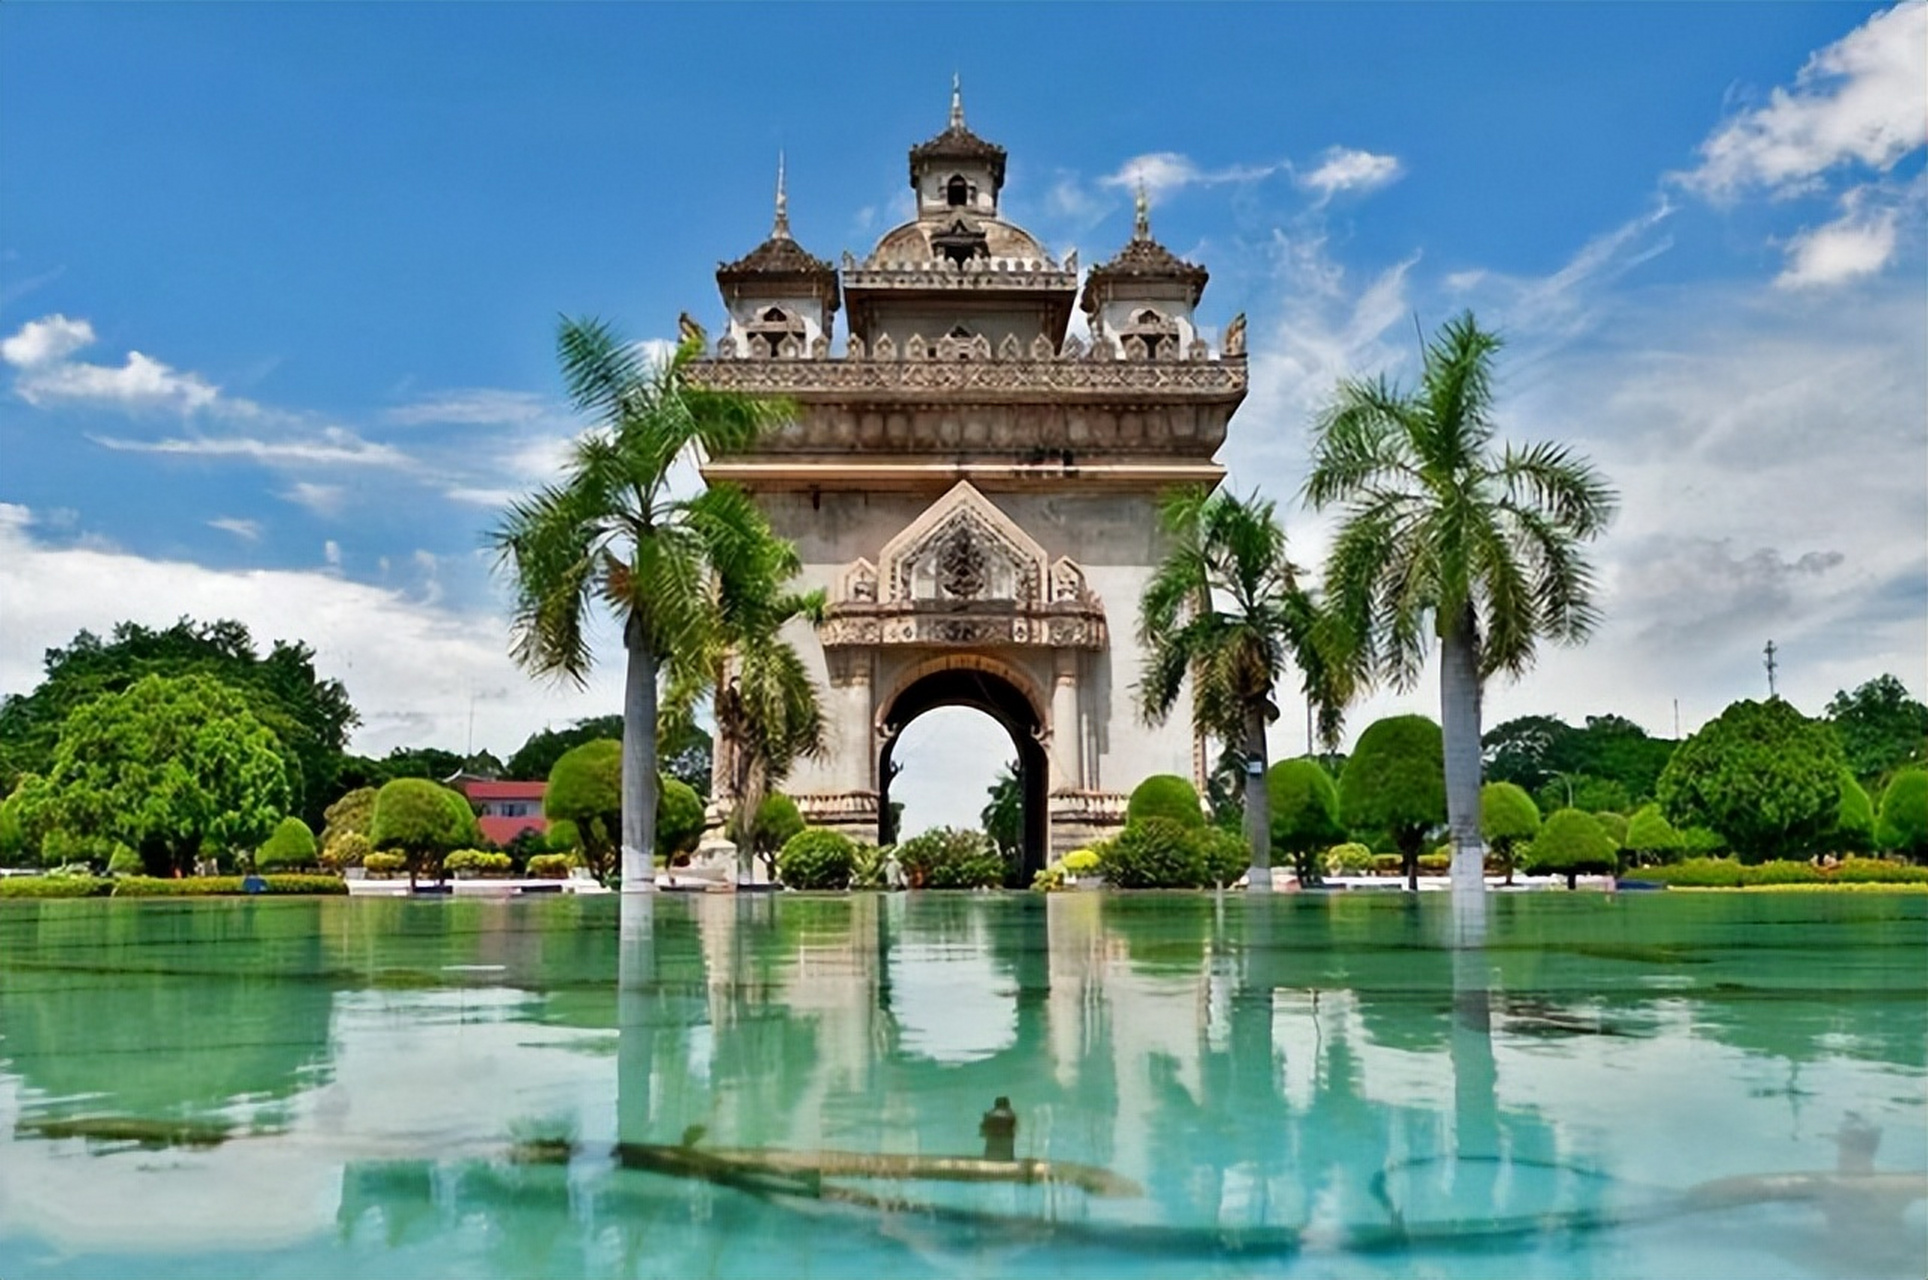 老挝为东南亚内陆国家,经济较落后,依赖农产品,电力出口和旅游业